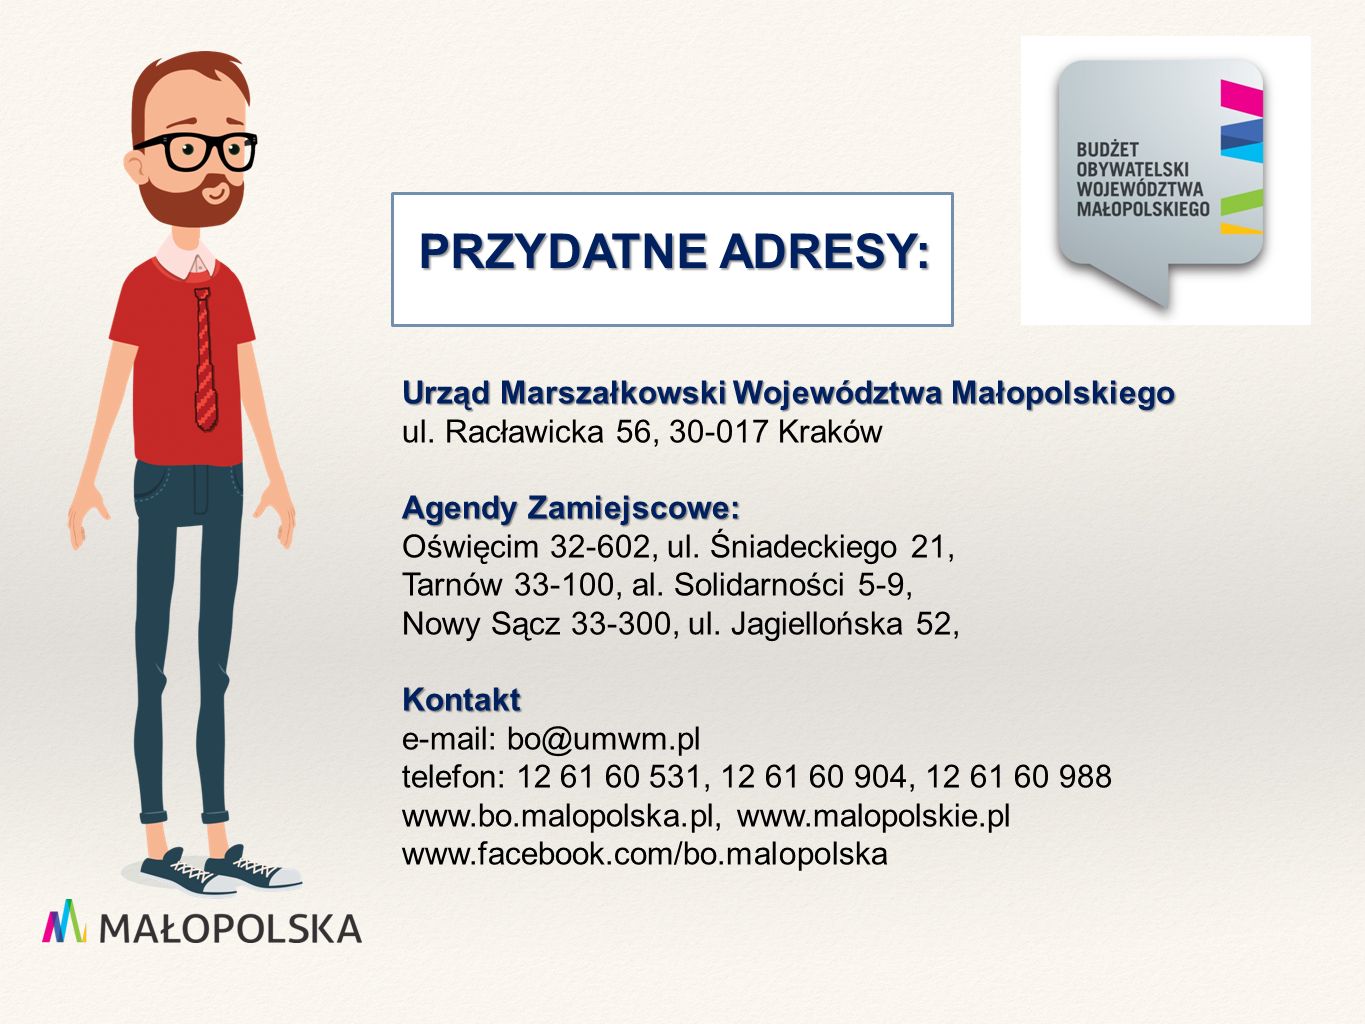 PRZYDATNE ADRESY: PRZYDATNE ADRESY: Urząd Marszałkowski Województwa Małopolskiego ul.